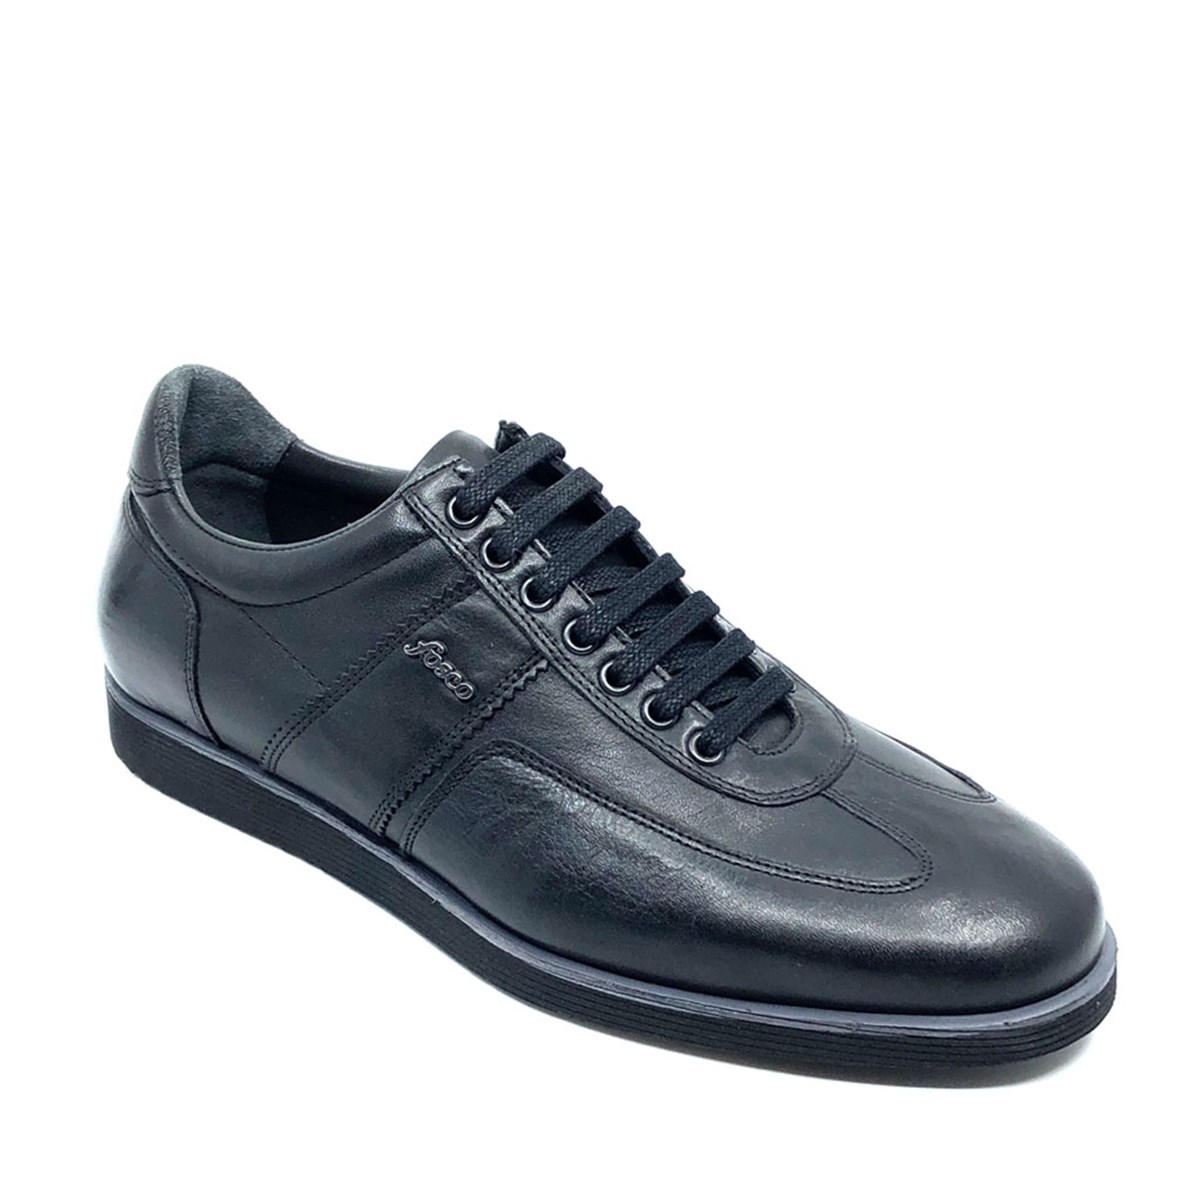 Erkek Siyah Günlük Confort Bağcıklı Spor Ayakkabı, Renk: Siyah, Beden: 40